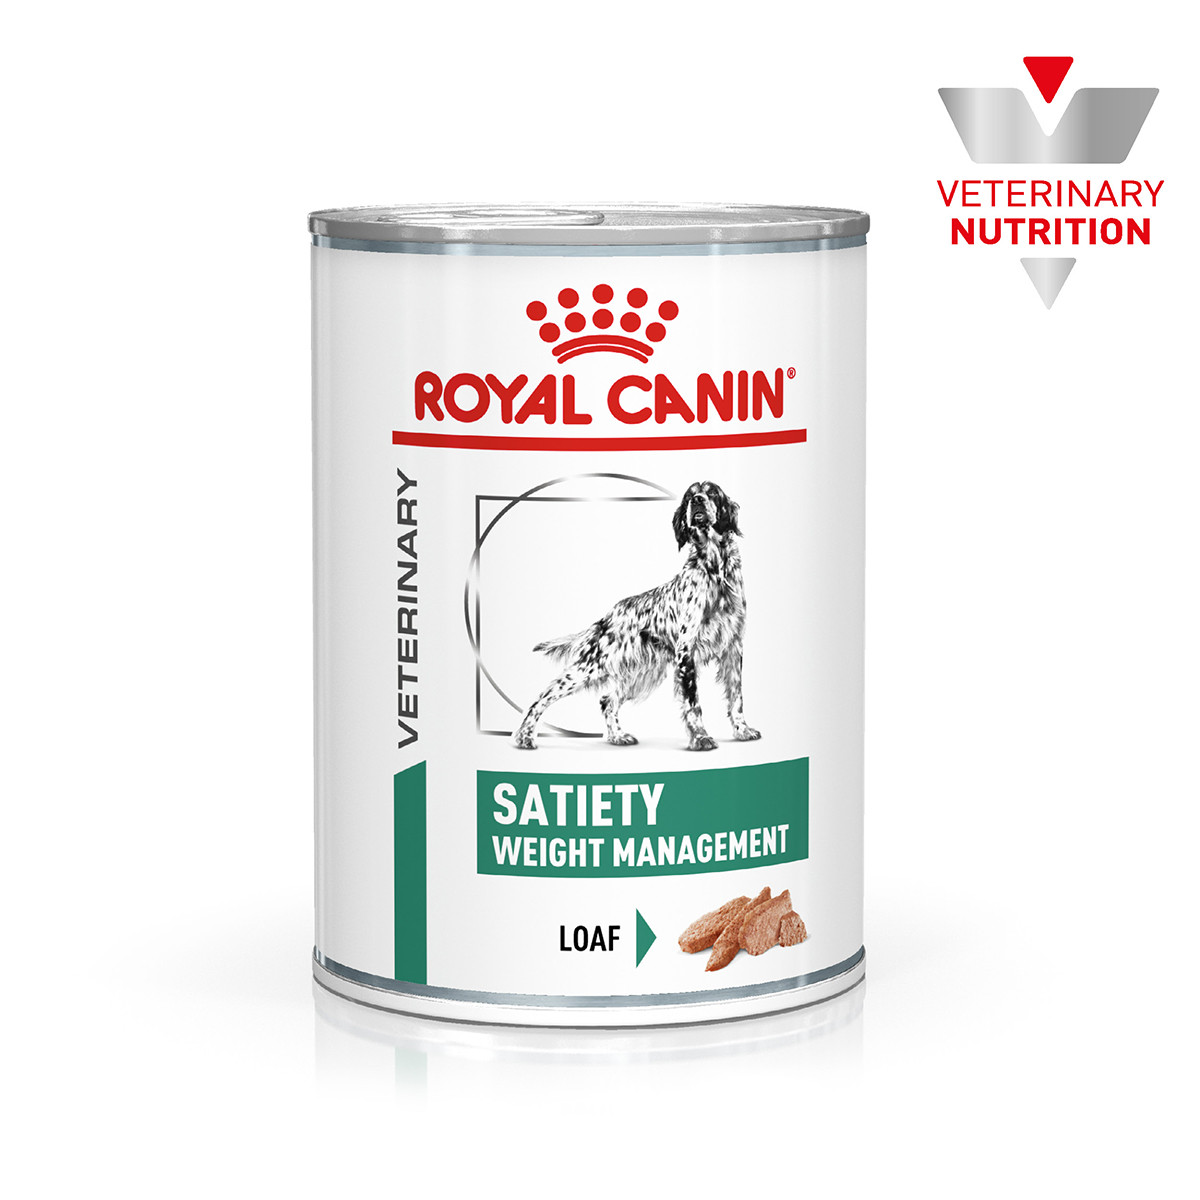 Вологий корм для дорослих собак ROYAL CANIN SATIETY WEIGHT MANAGEMENT DOG Cans 0.41 кг, фото 1